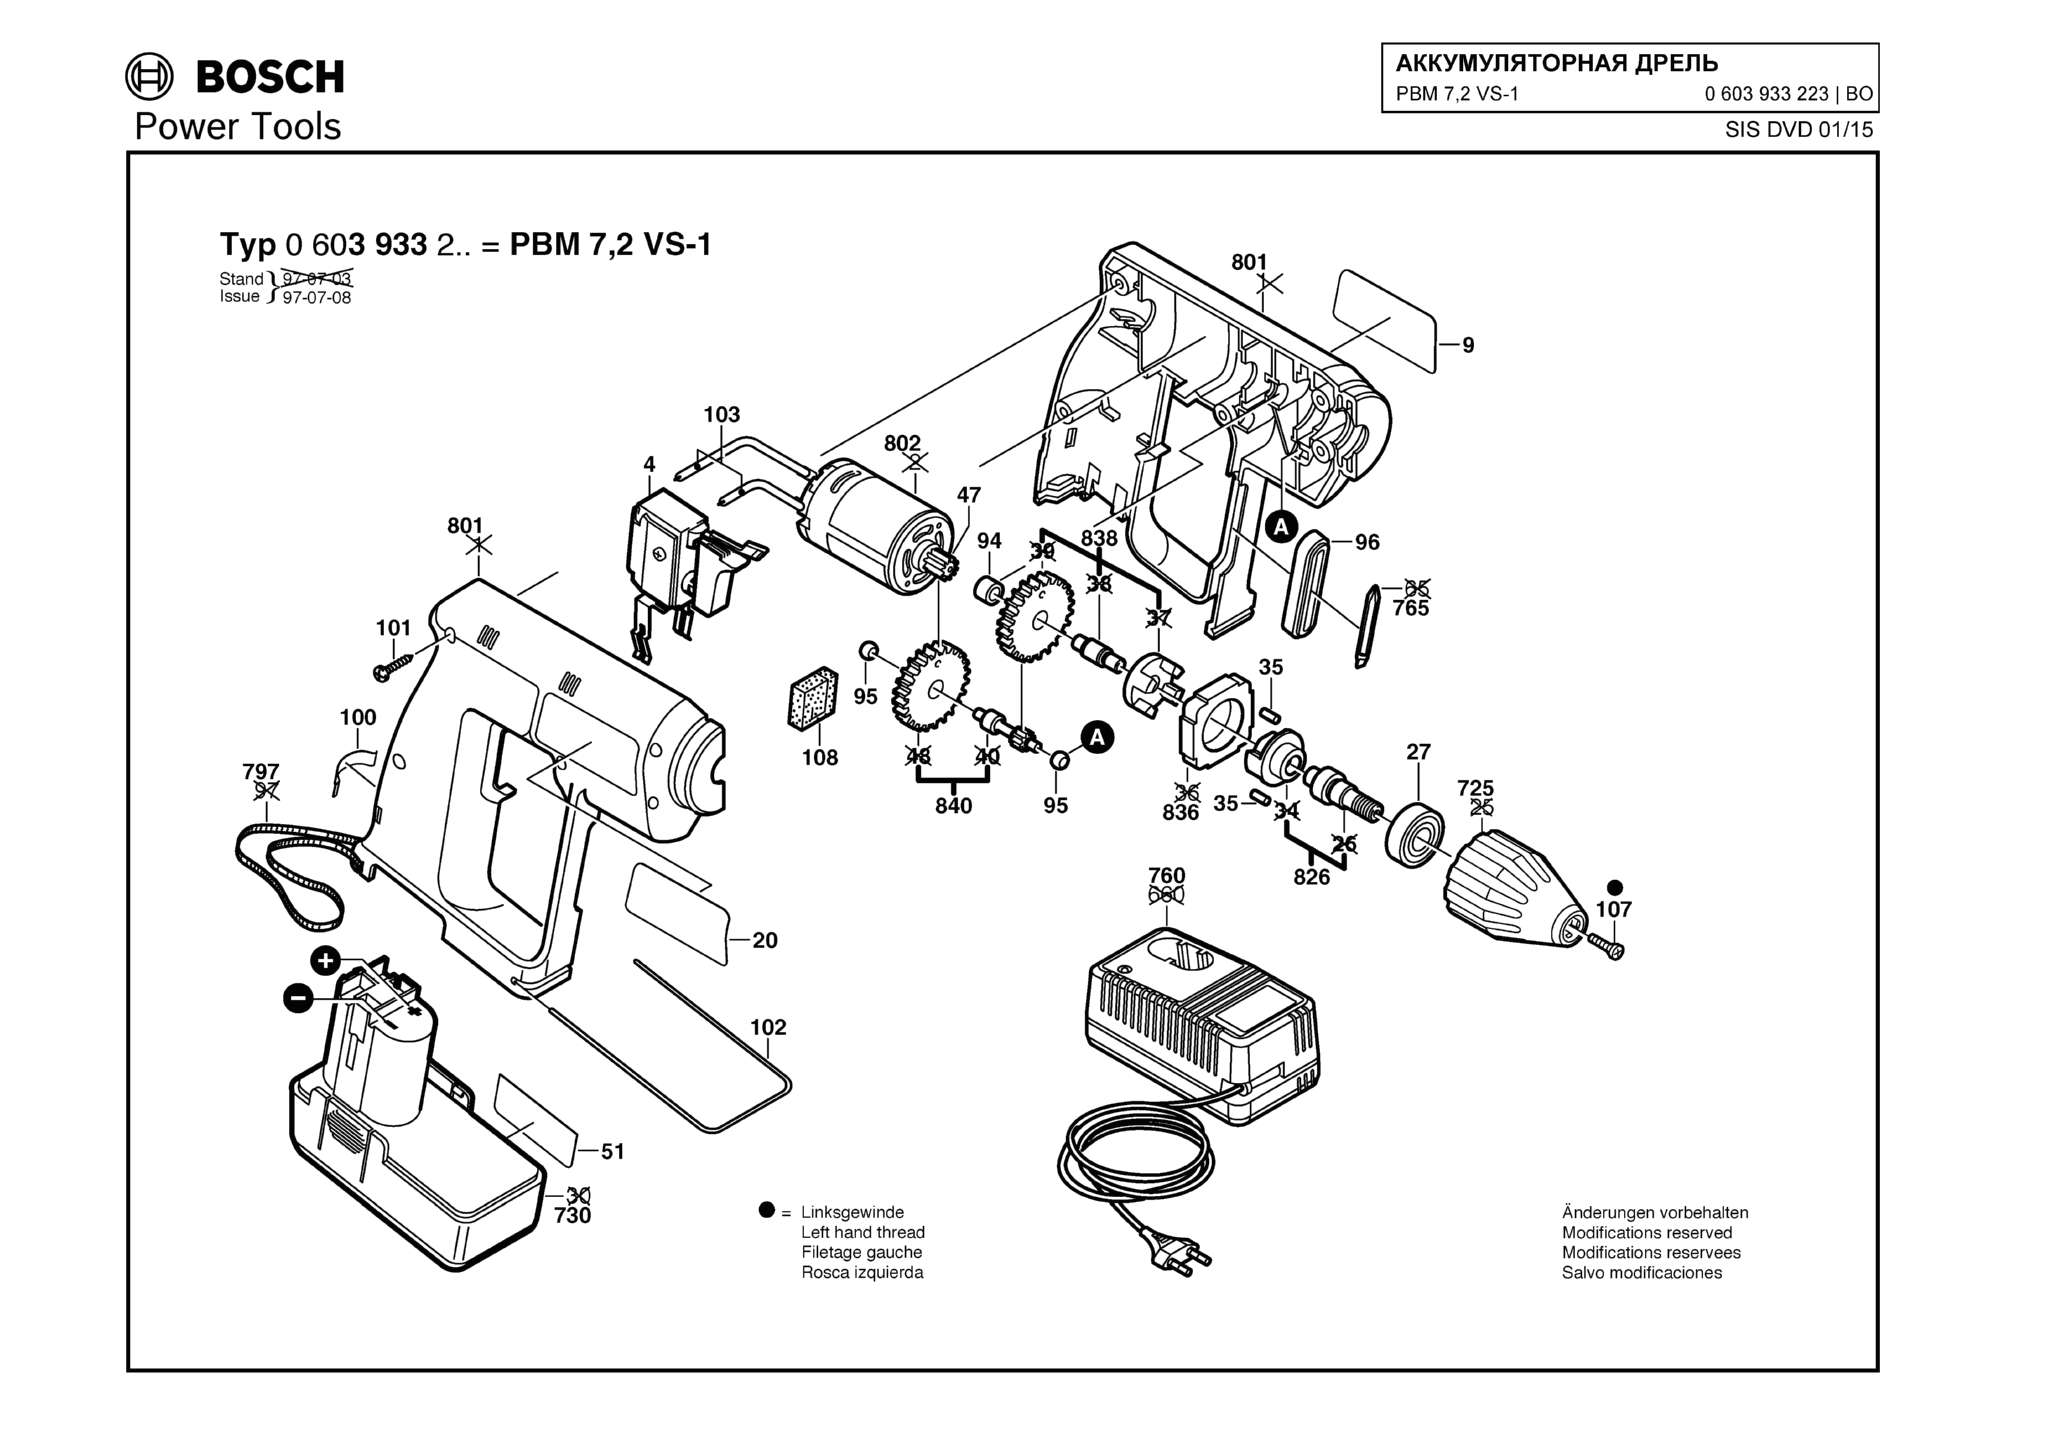 Запчасти, схема и деталировка Bosch PBM 7,2 VS-1 (ТИП 0603933223)